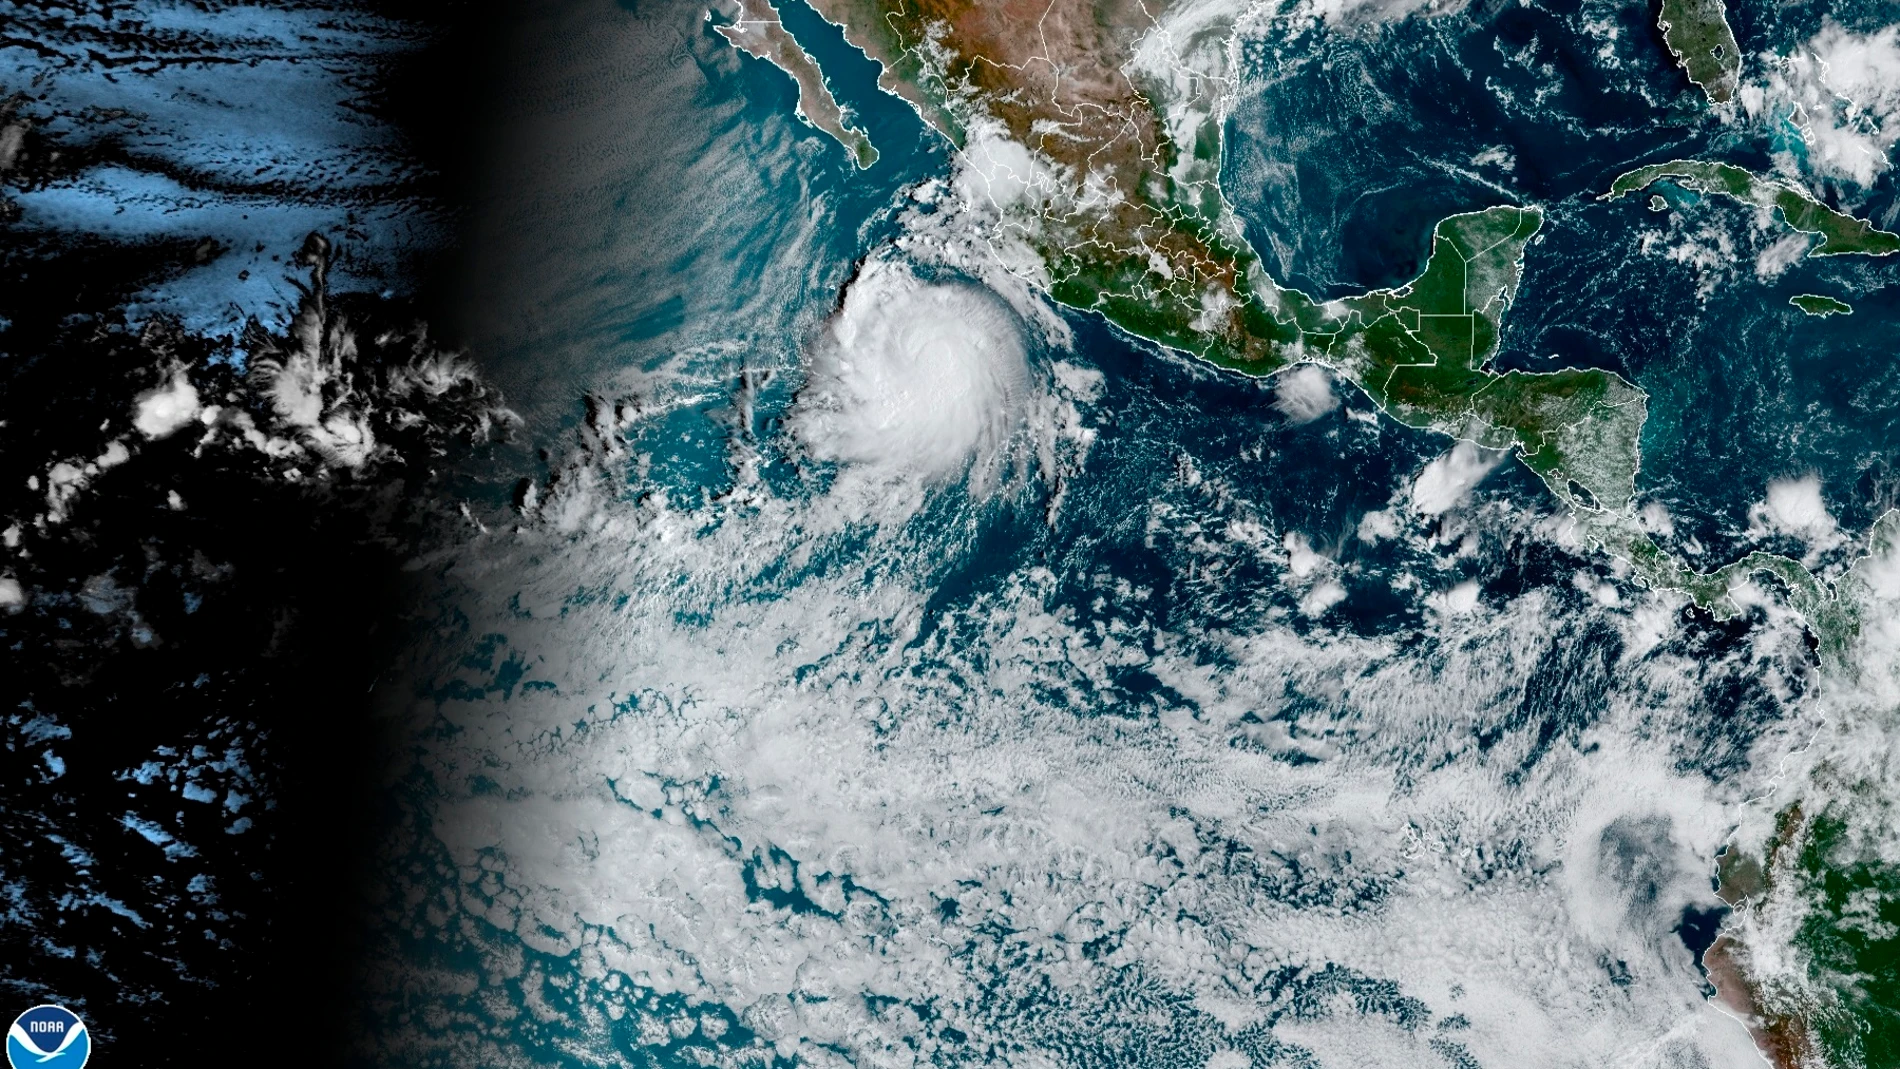 USA2542. MIAMI (ESTADOS UNIDOS), 11/10/2021.- Imagen cedida hoy por la Oficina Nacional de Administración Oceánica y Atmosférica (NOAA) de Estados Unidos a través del Centro Nacional de Huracanes (NHC) donde se muestra la localización de la tormenta tropical Pamela en el Pacífico mexicano. La tormenta tropical Pamela dejará lluvias muy fuertes en varios estados del Pacífico mexicano en las próximas horas, según informó este lunes el Servicio Meteorológico Nacional (SMN). EFE/NOAA-NHC /SOLO USO EDITORIAL/NO VENTAS/SOLO DISPONIBLE PARA ILUSTRAR LA NOTICIA QUE ACOMPAÑA/CRÉDITO OBLIGATORIO